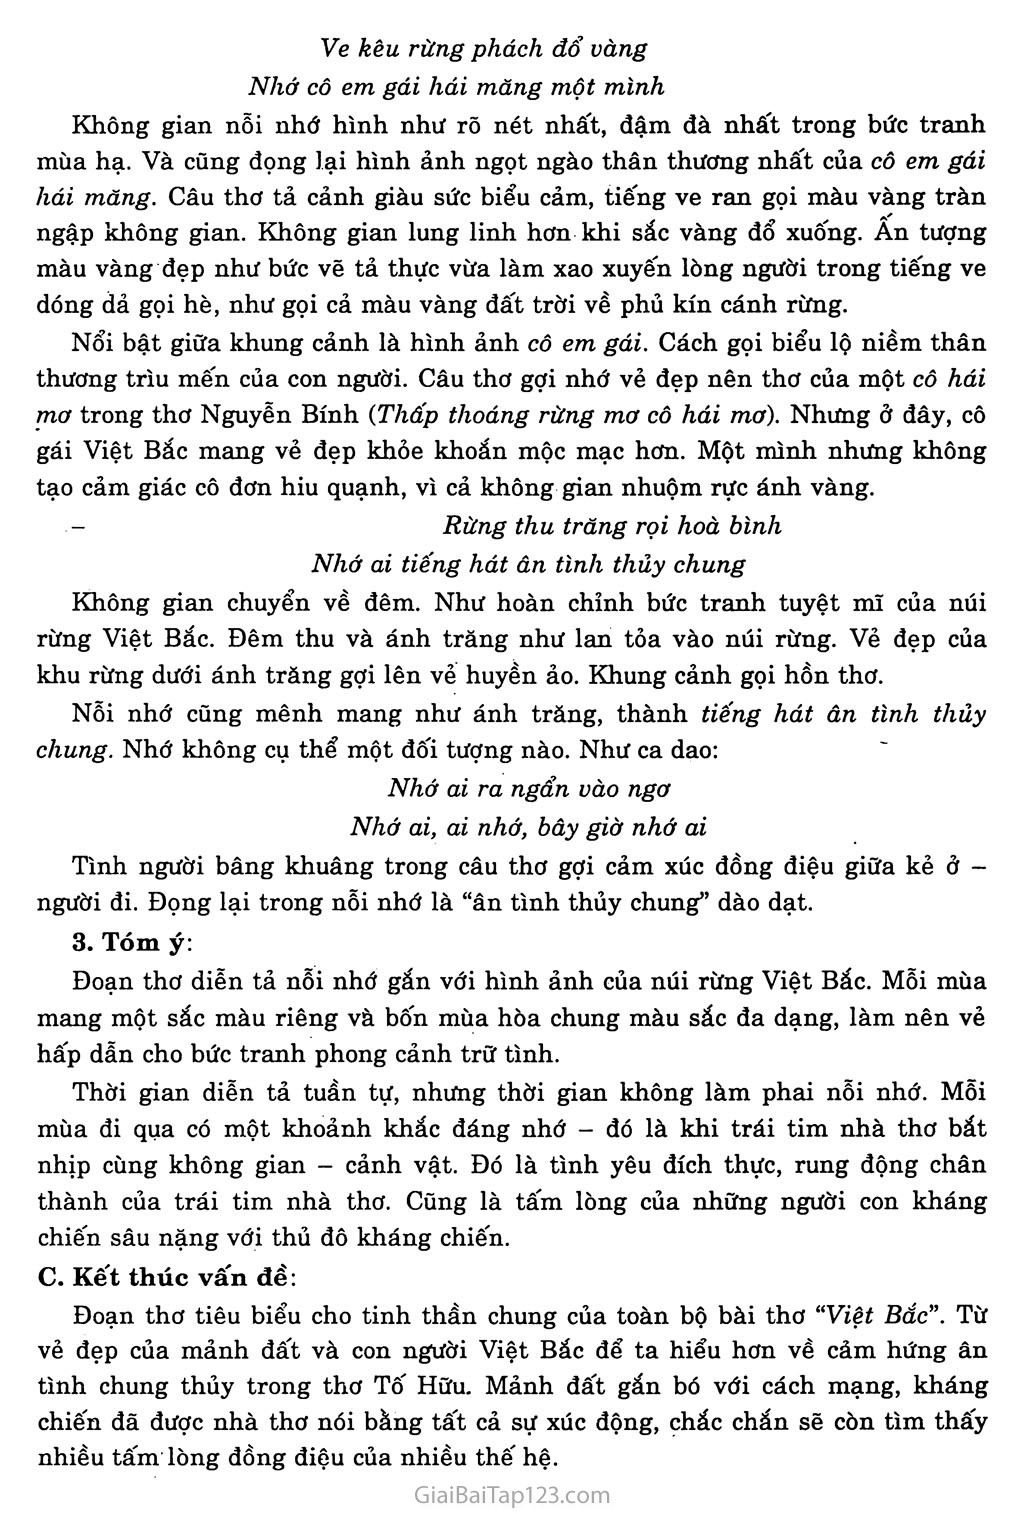 Việt Bắc (Tố Hữu, 1954) trang 11